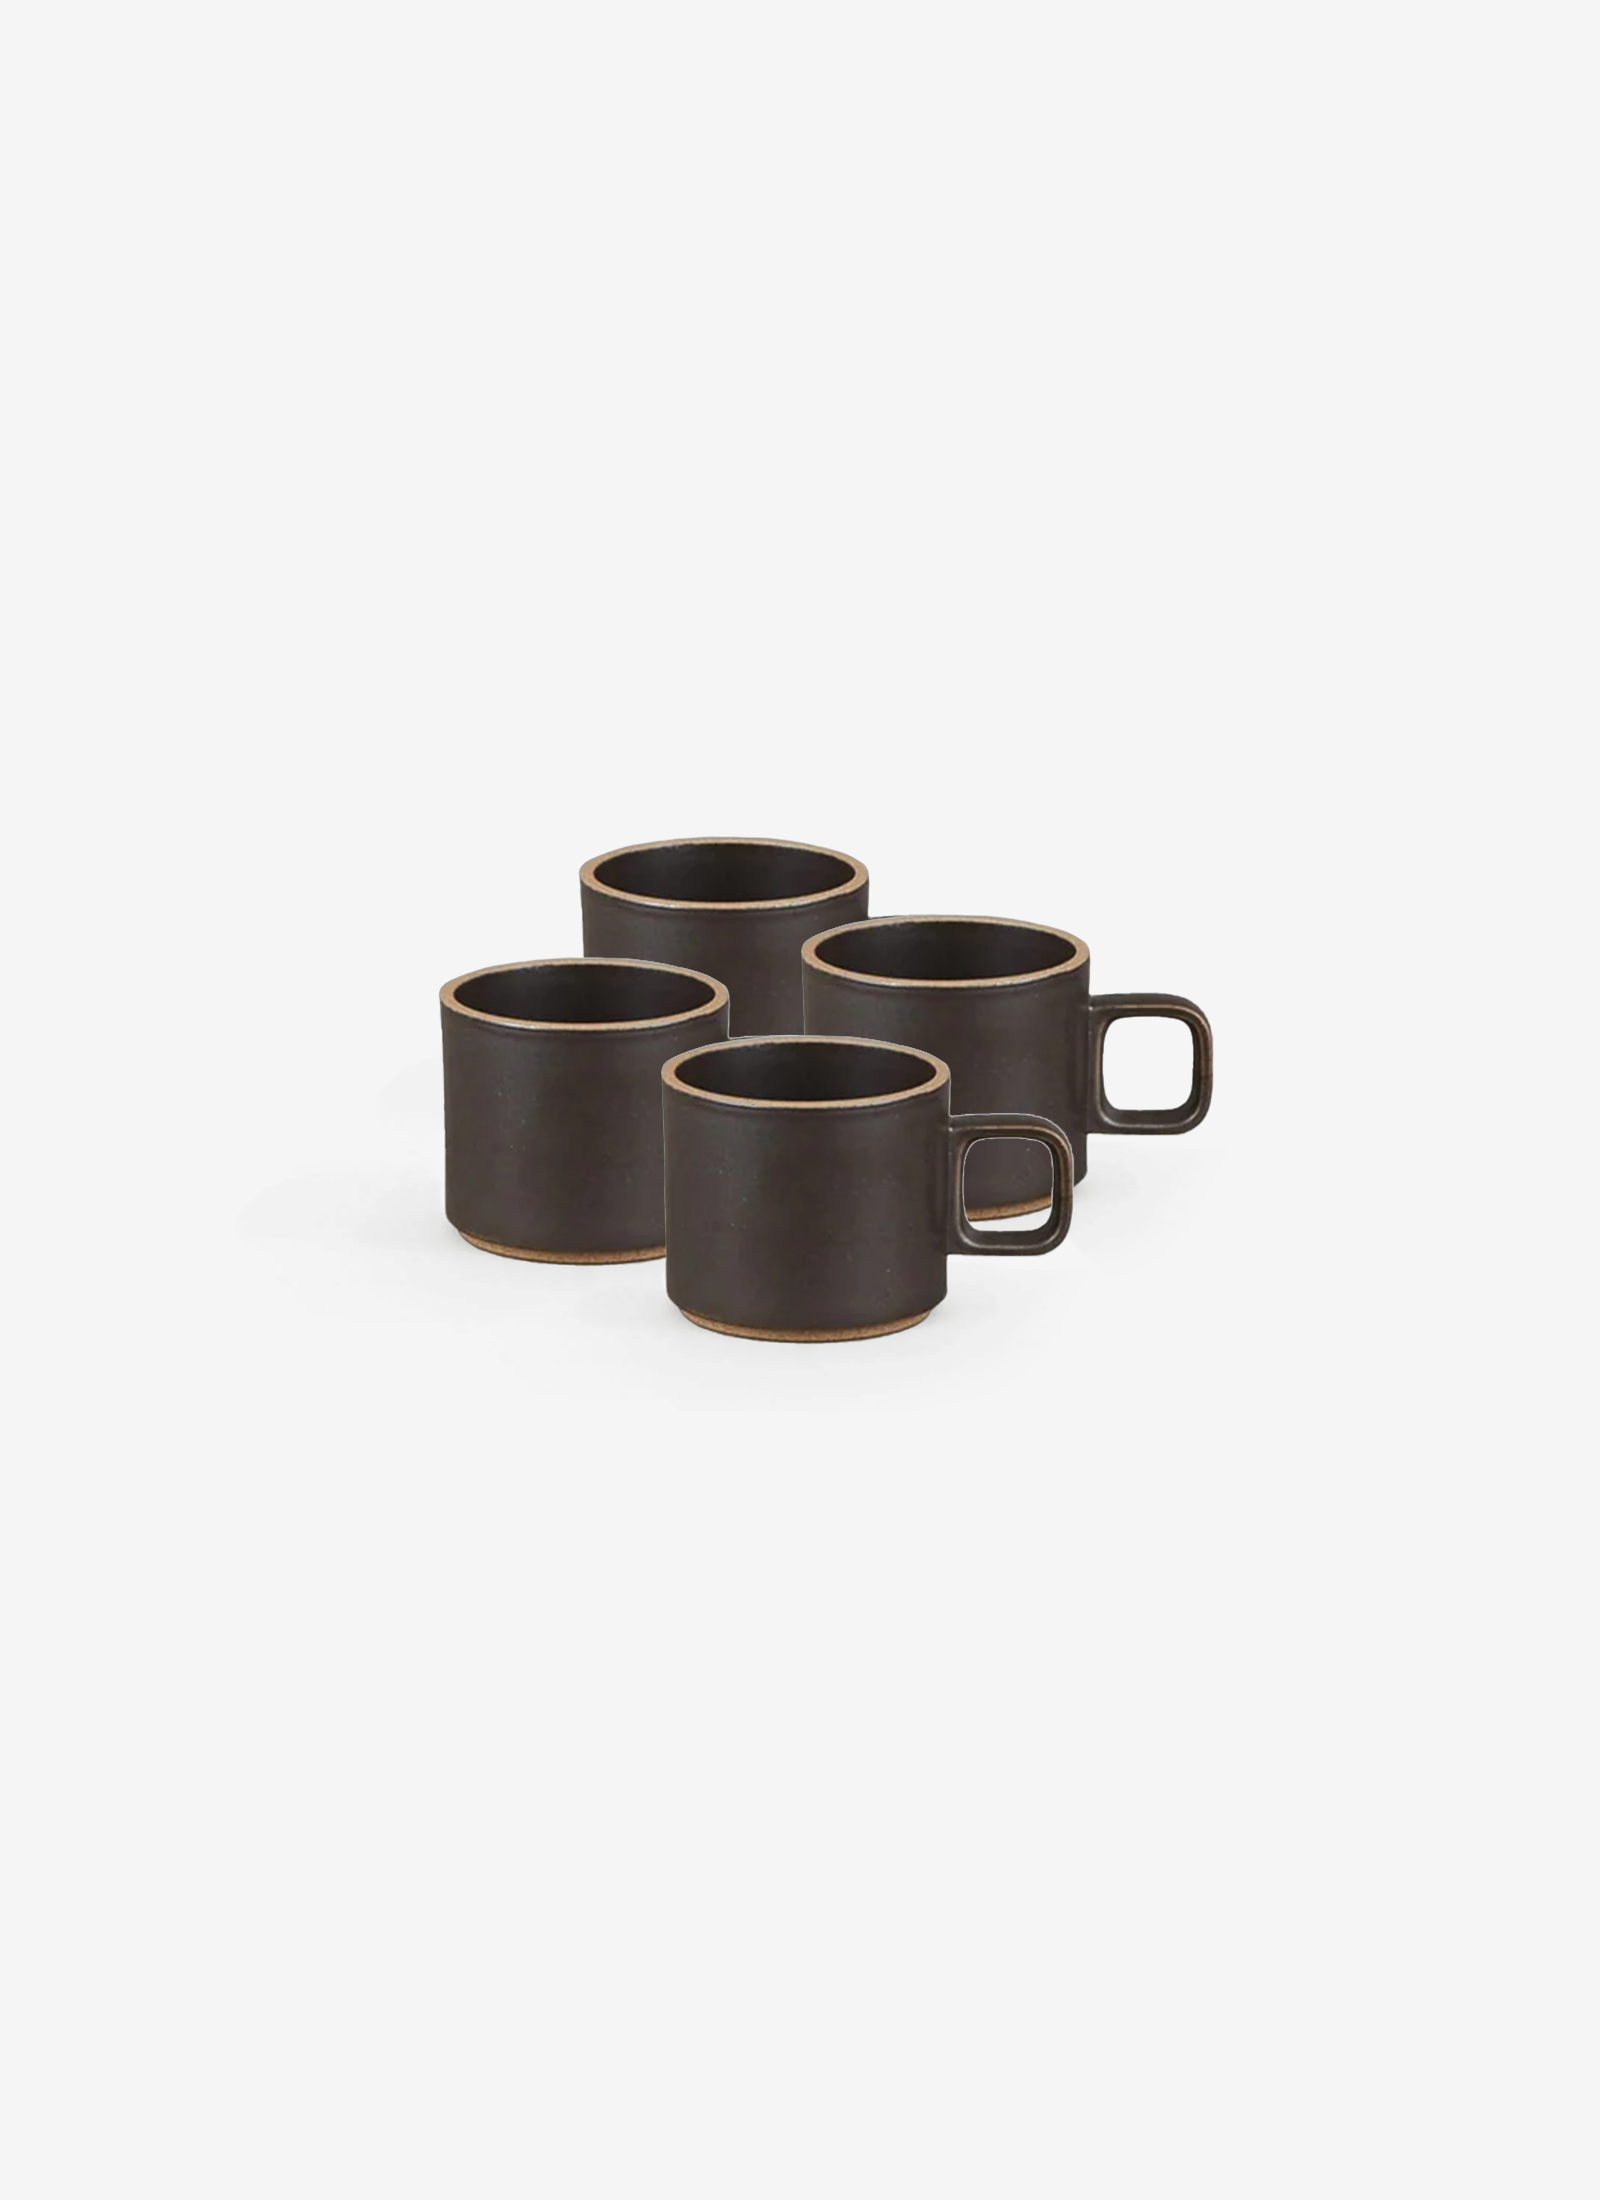 Small Black Mugs - set of 4